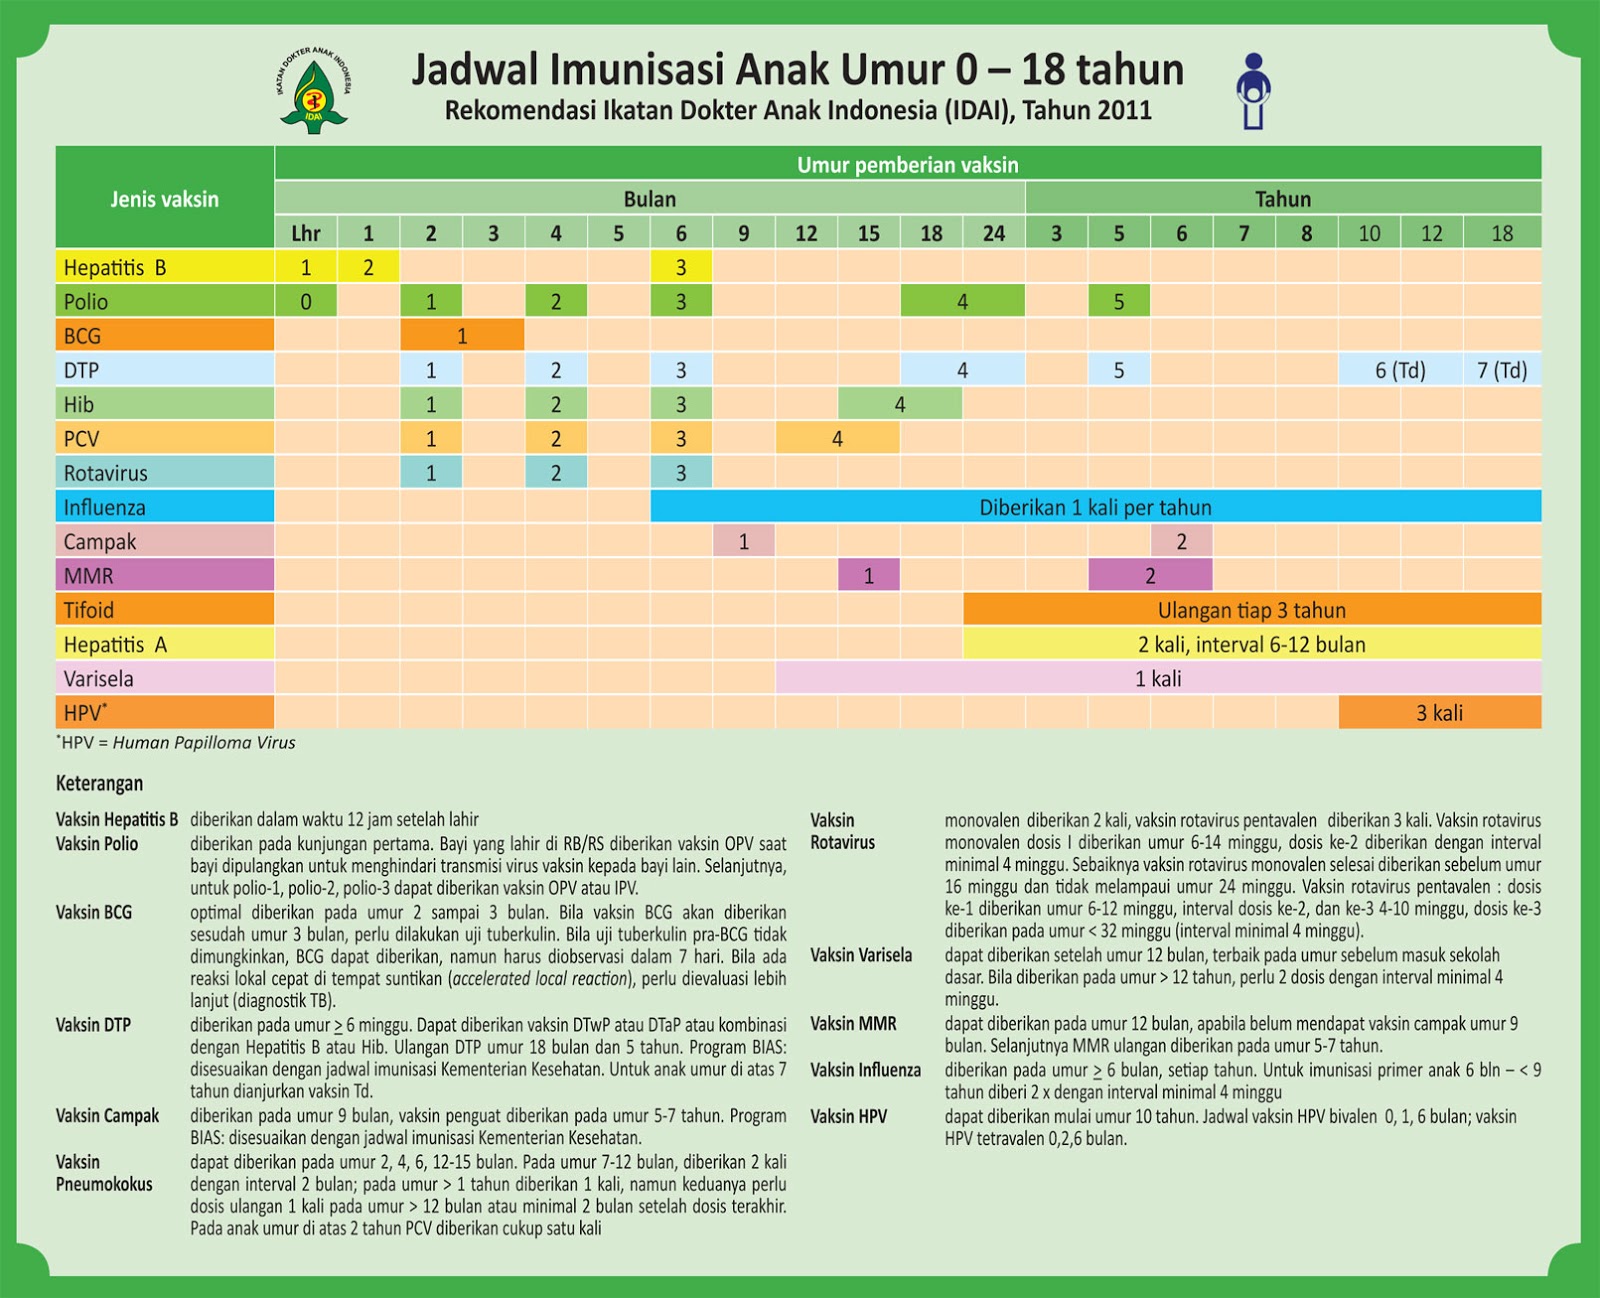  JADWAL IMUNISASI IDAI  2012 PDF